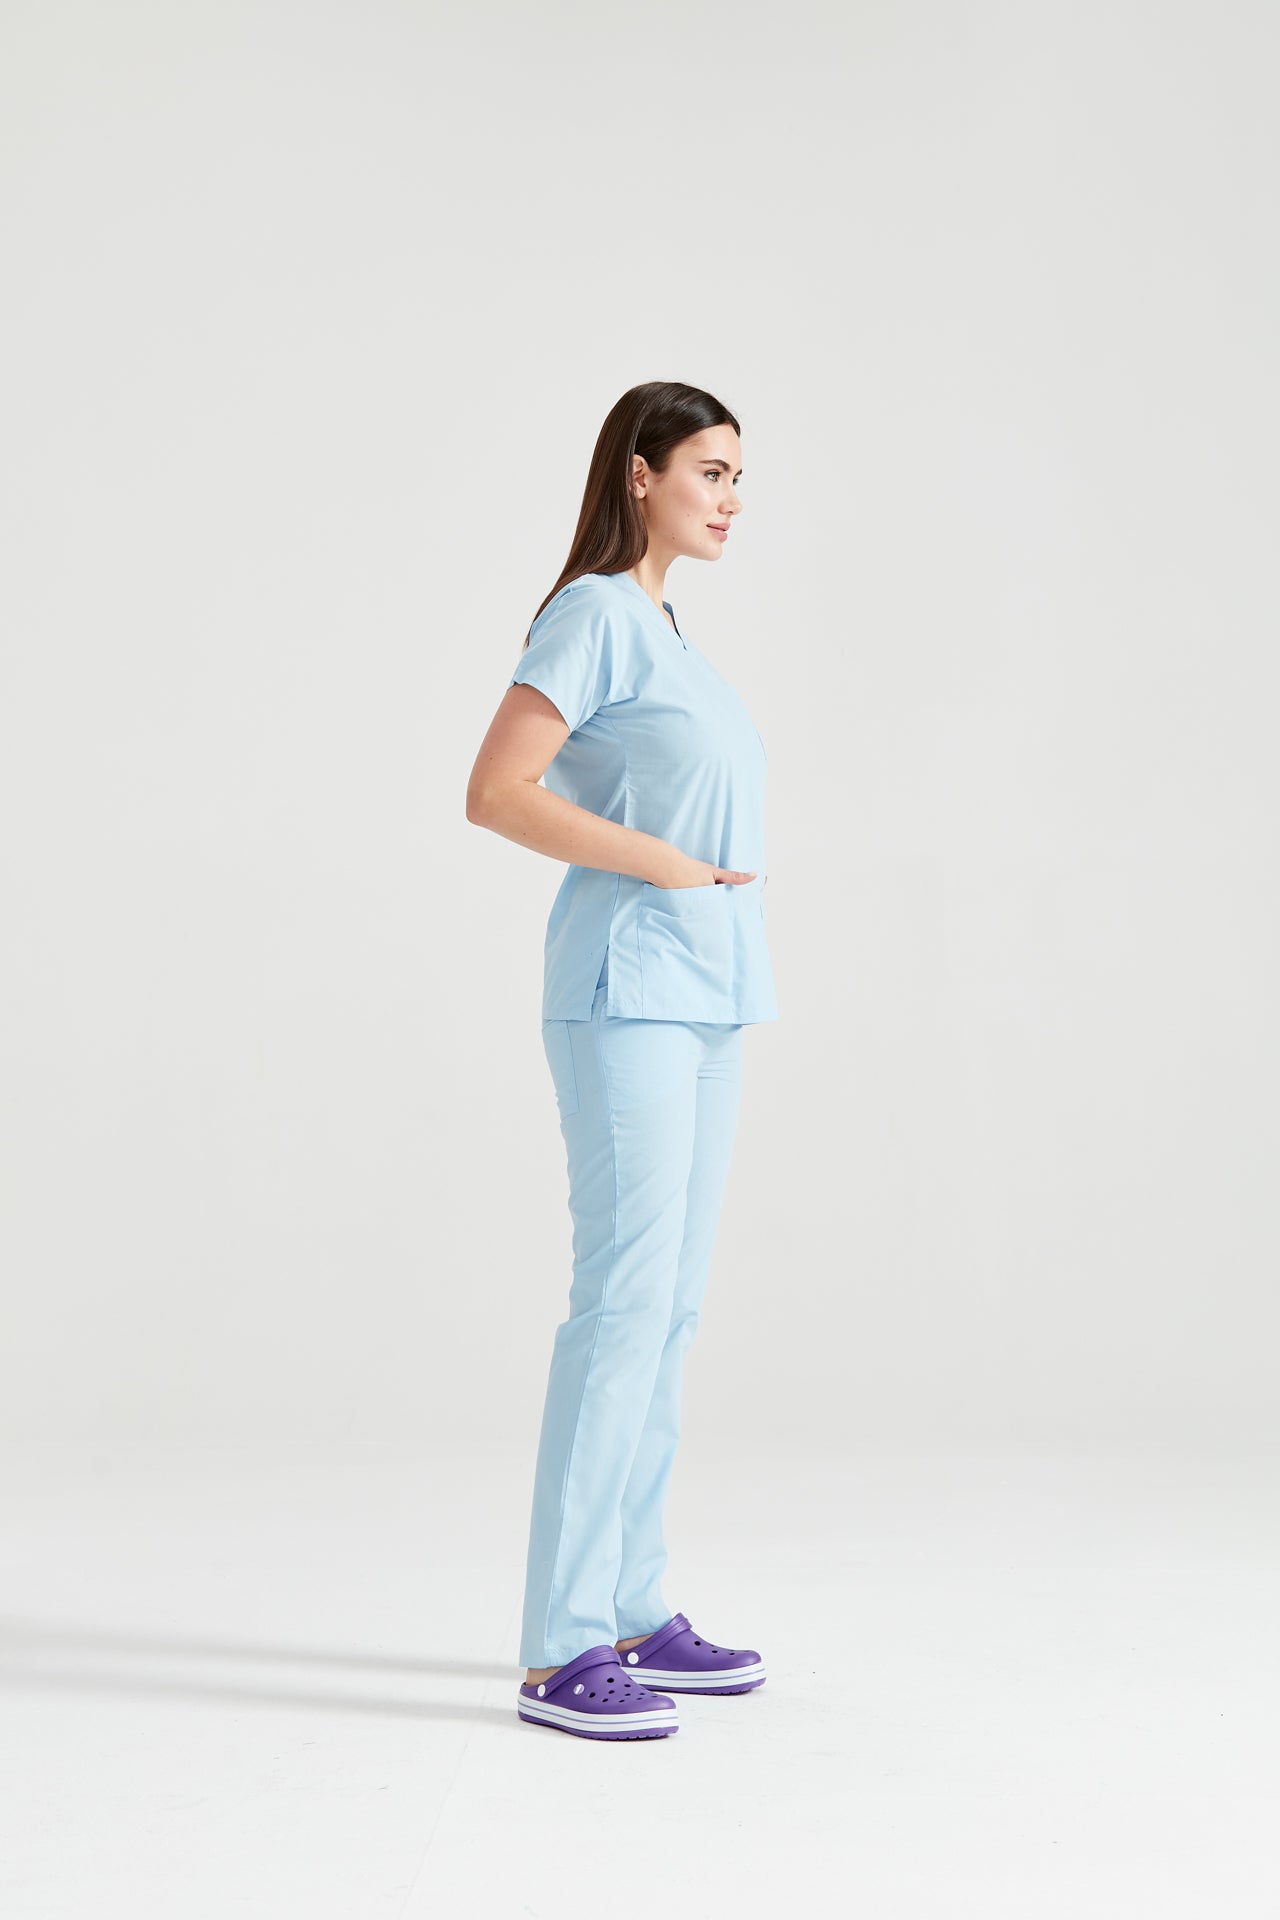 Asistenta medicala imbracata in costum medical Blu Ciel, vedere din profil